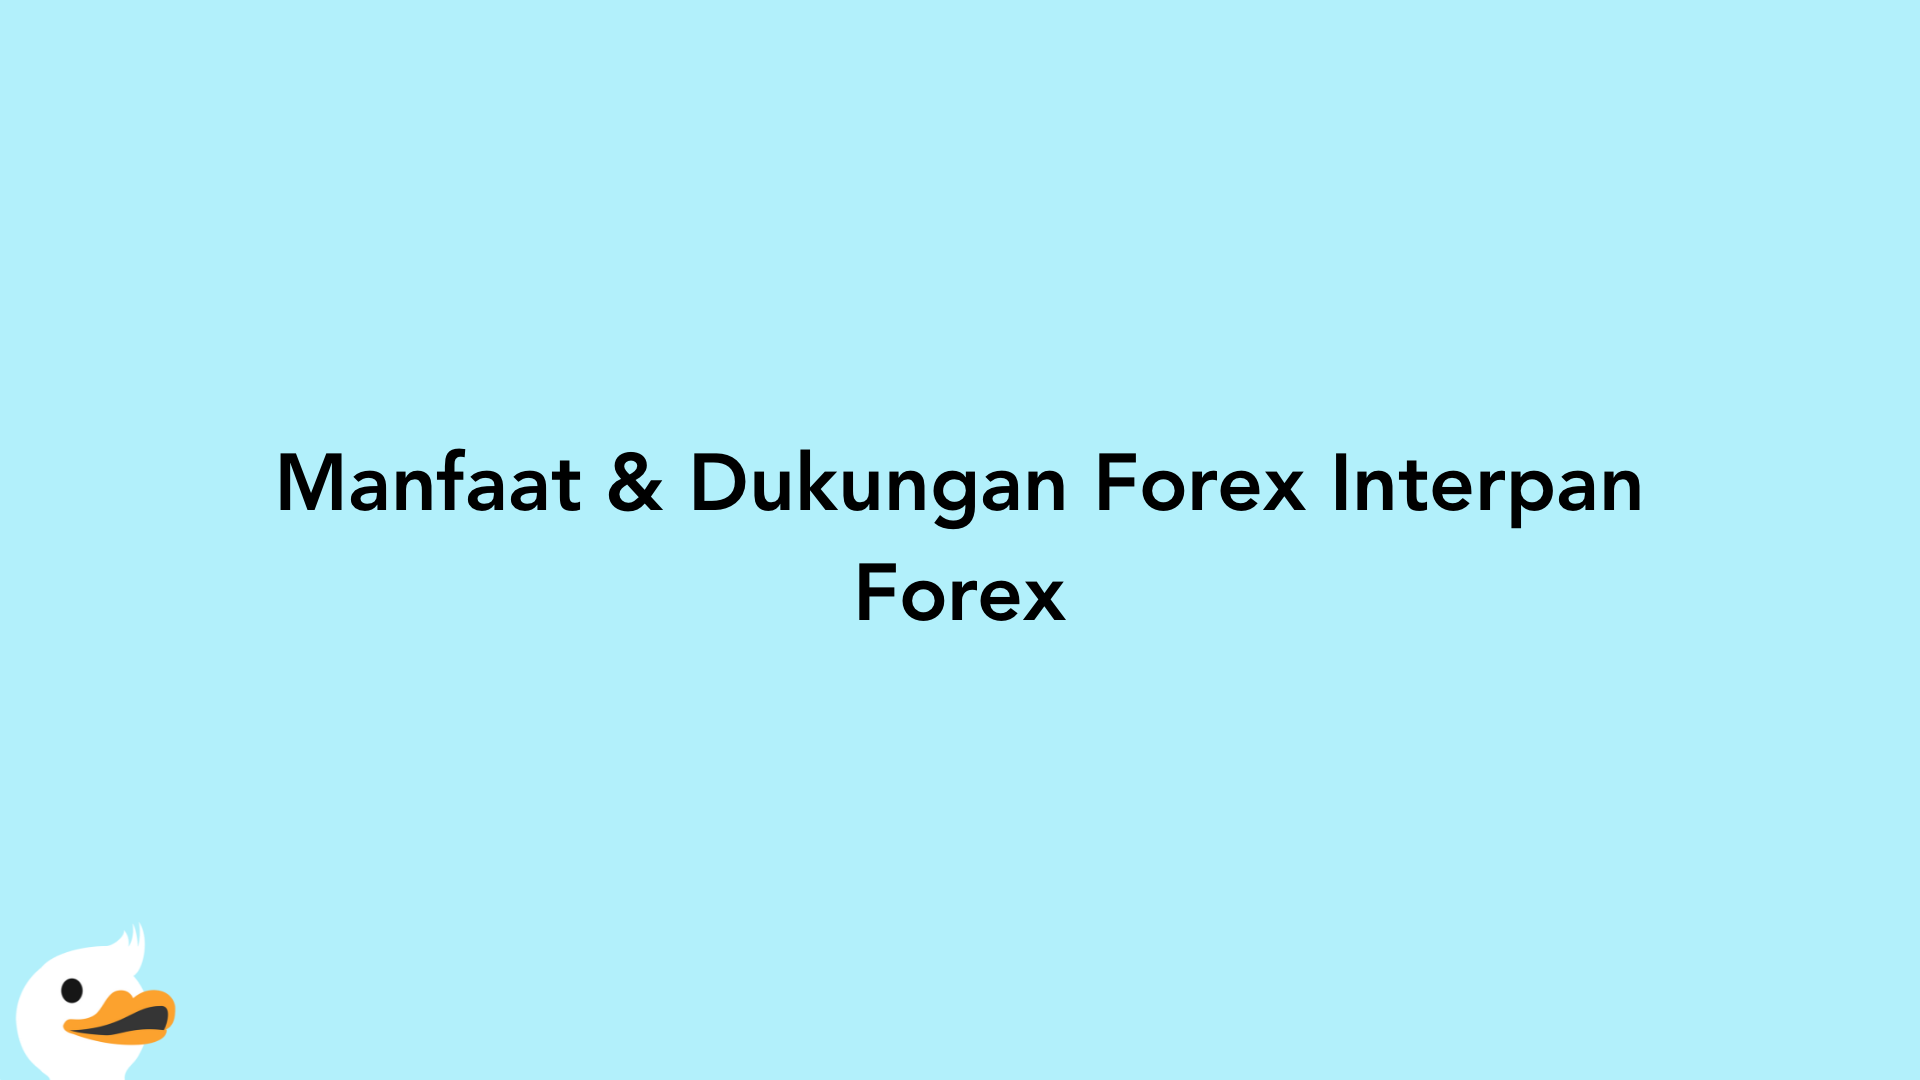 Manfaat & Dukungan Forex Interpan Forex